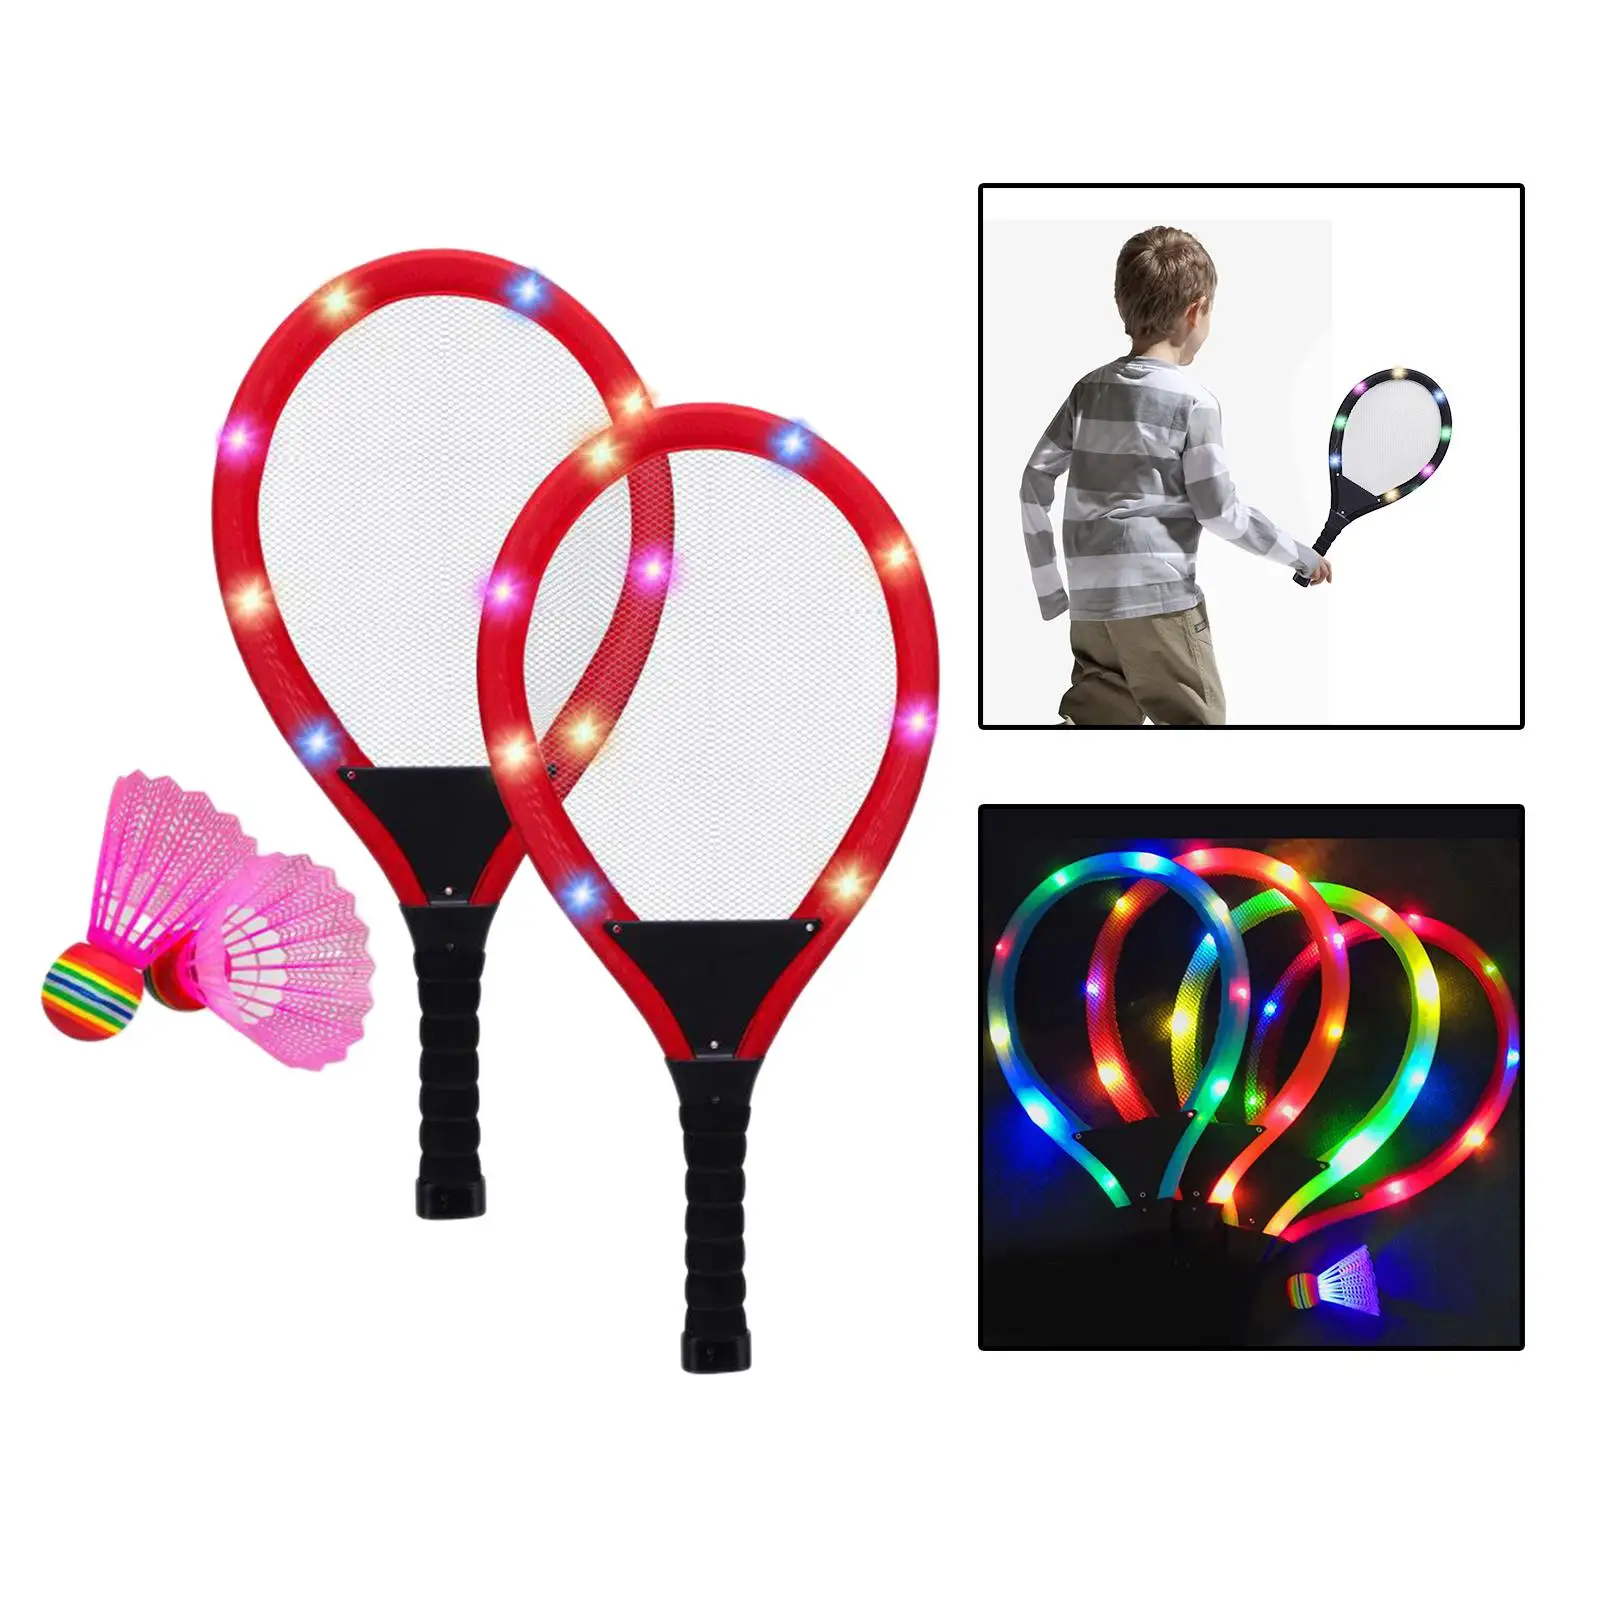 Badminton Tennis Toy Tennis Training Indoor/Outdoor Sport Kids Tennis Racket Set for Age 8 9 10